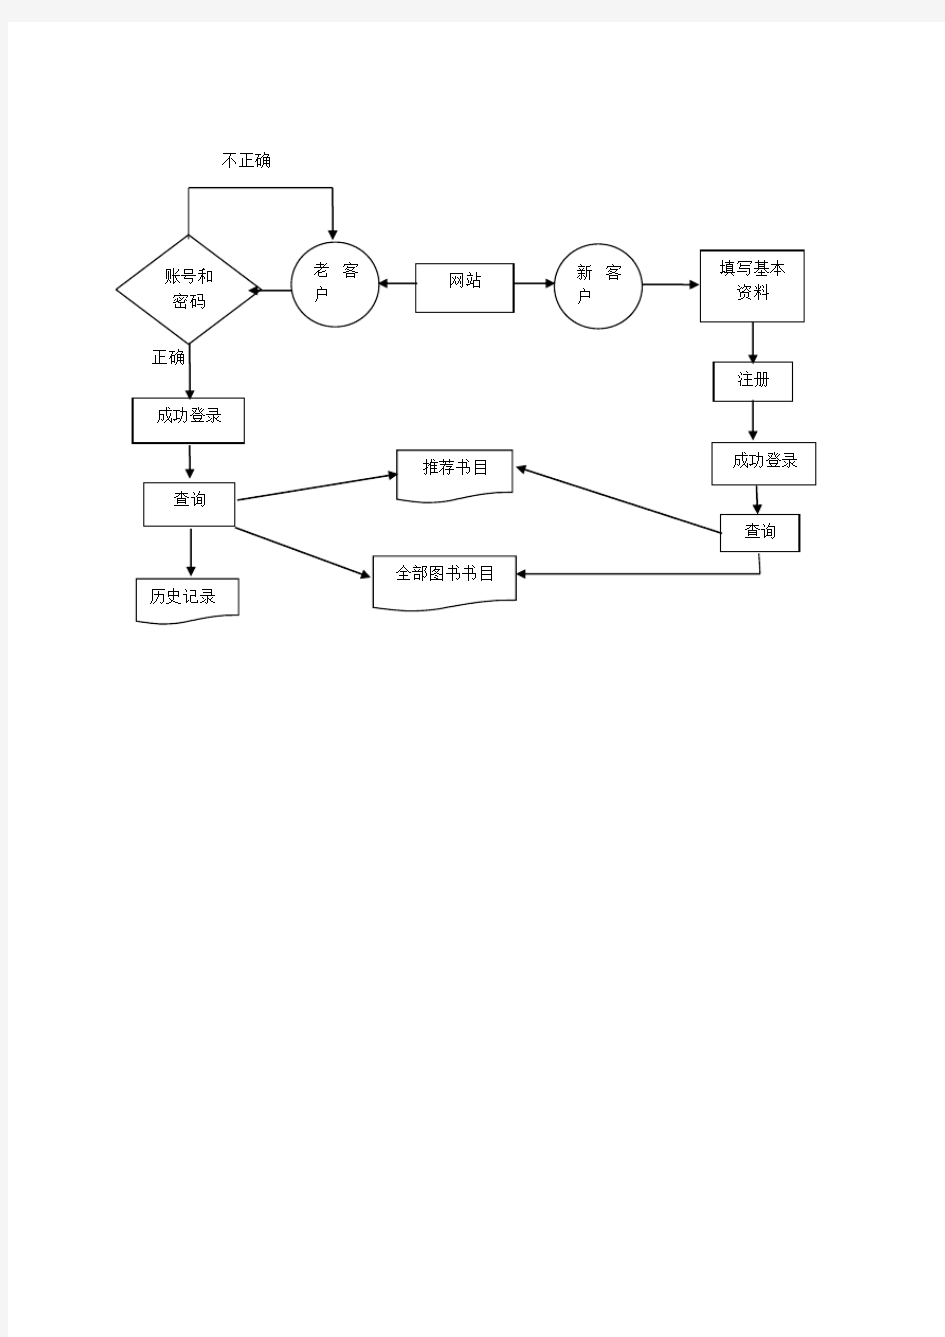 管理信息系统的业务流程图